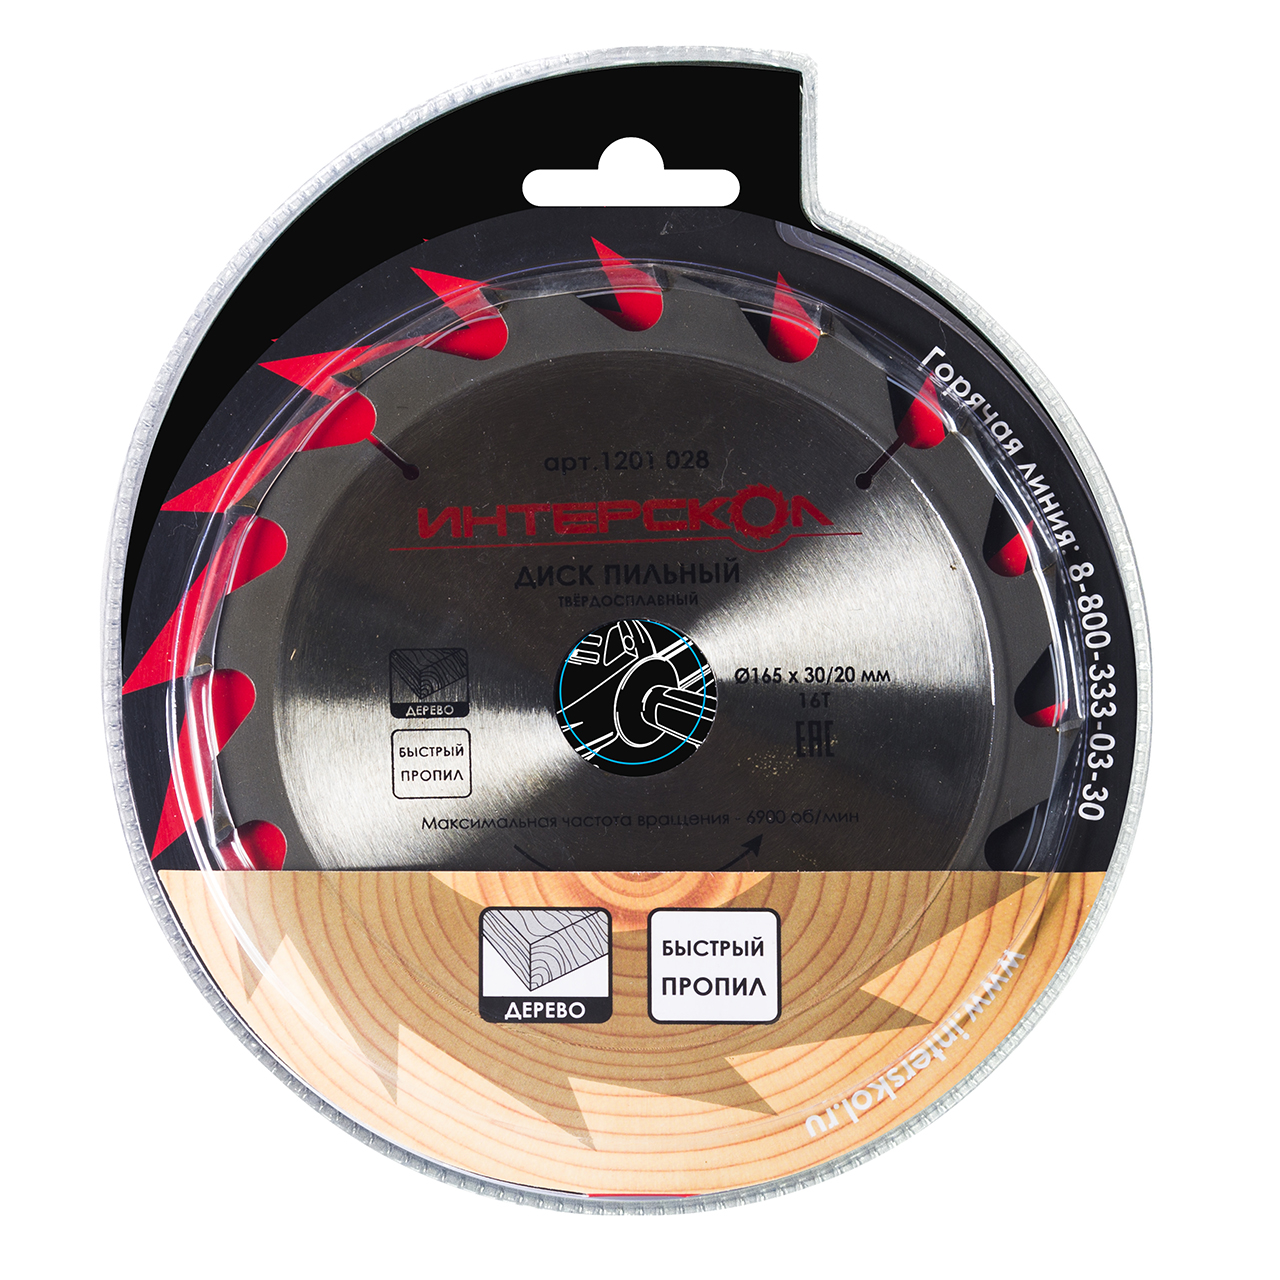 Диски пильные для дисковых и торцовочных пил ИНТЕРСКОЛ Пильный диск по дереву (быстрый пропил) 160 мм